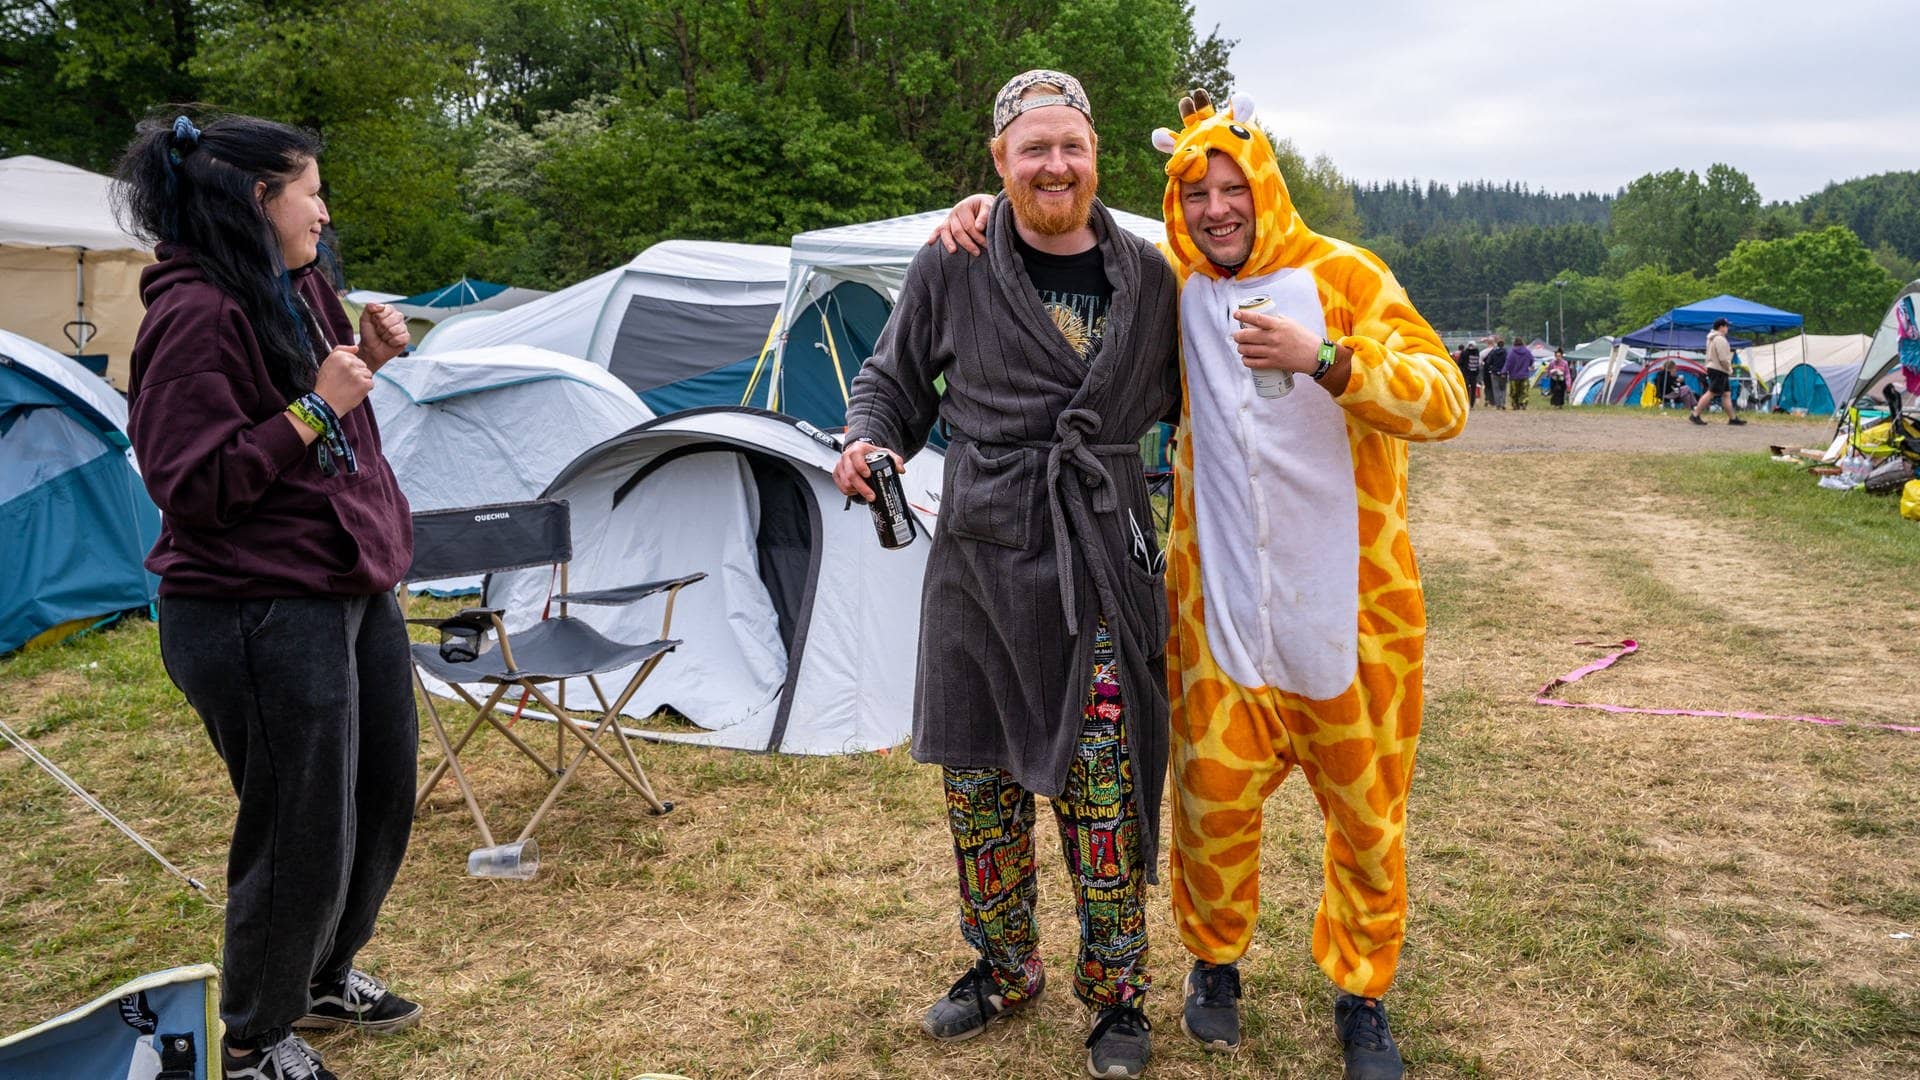 Zwei junge Männer und eine Frau sind auf dem Campingplatz bei Rock am Ring bereits morgens gut gelaunt mit Giraffen-Kostüm und Bademantel bekleidet